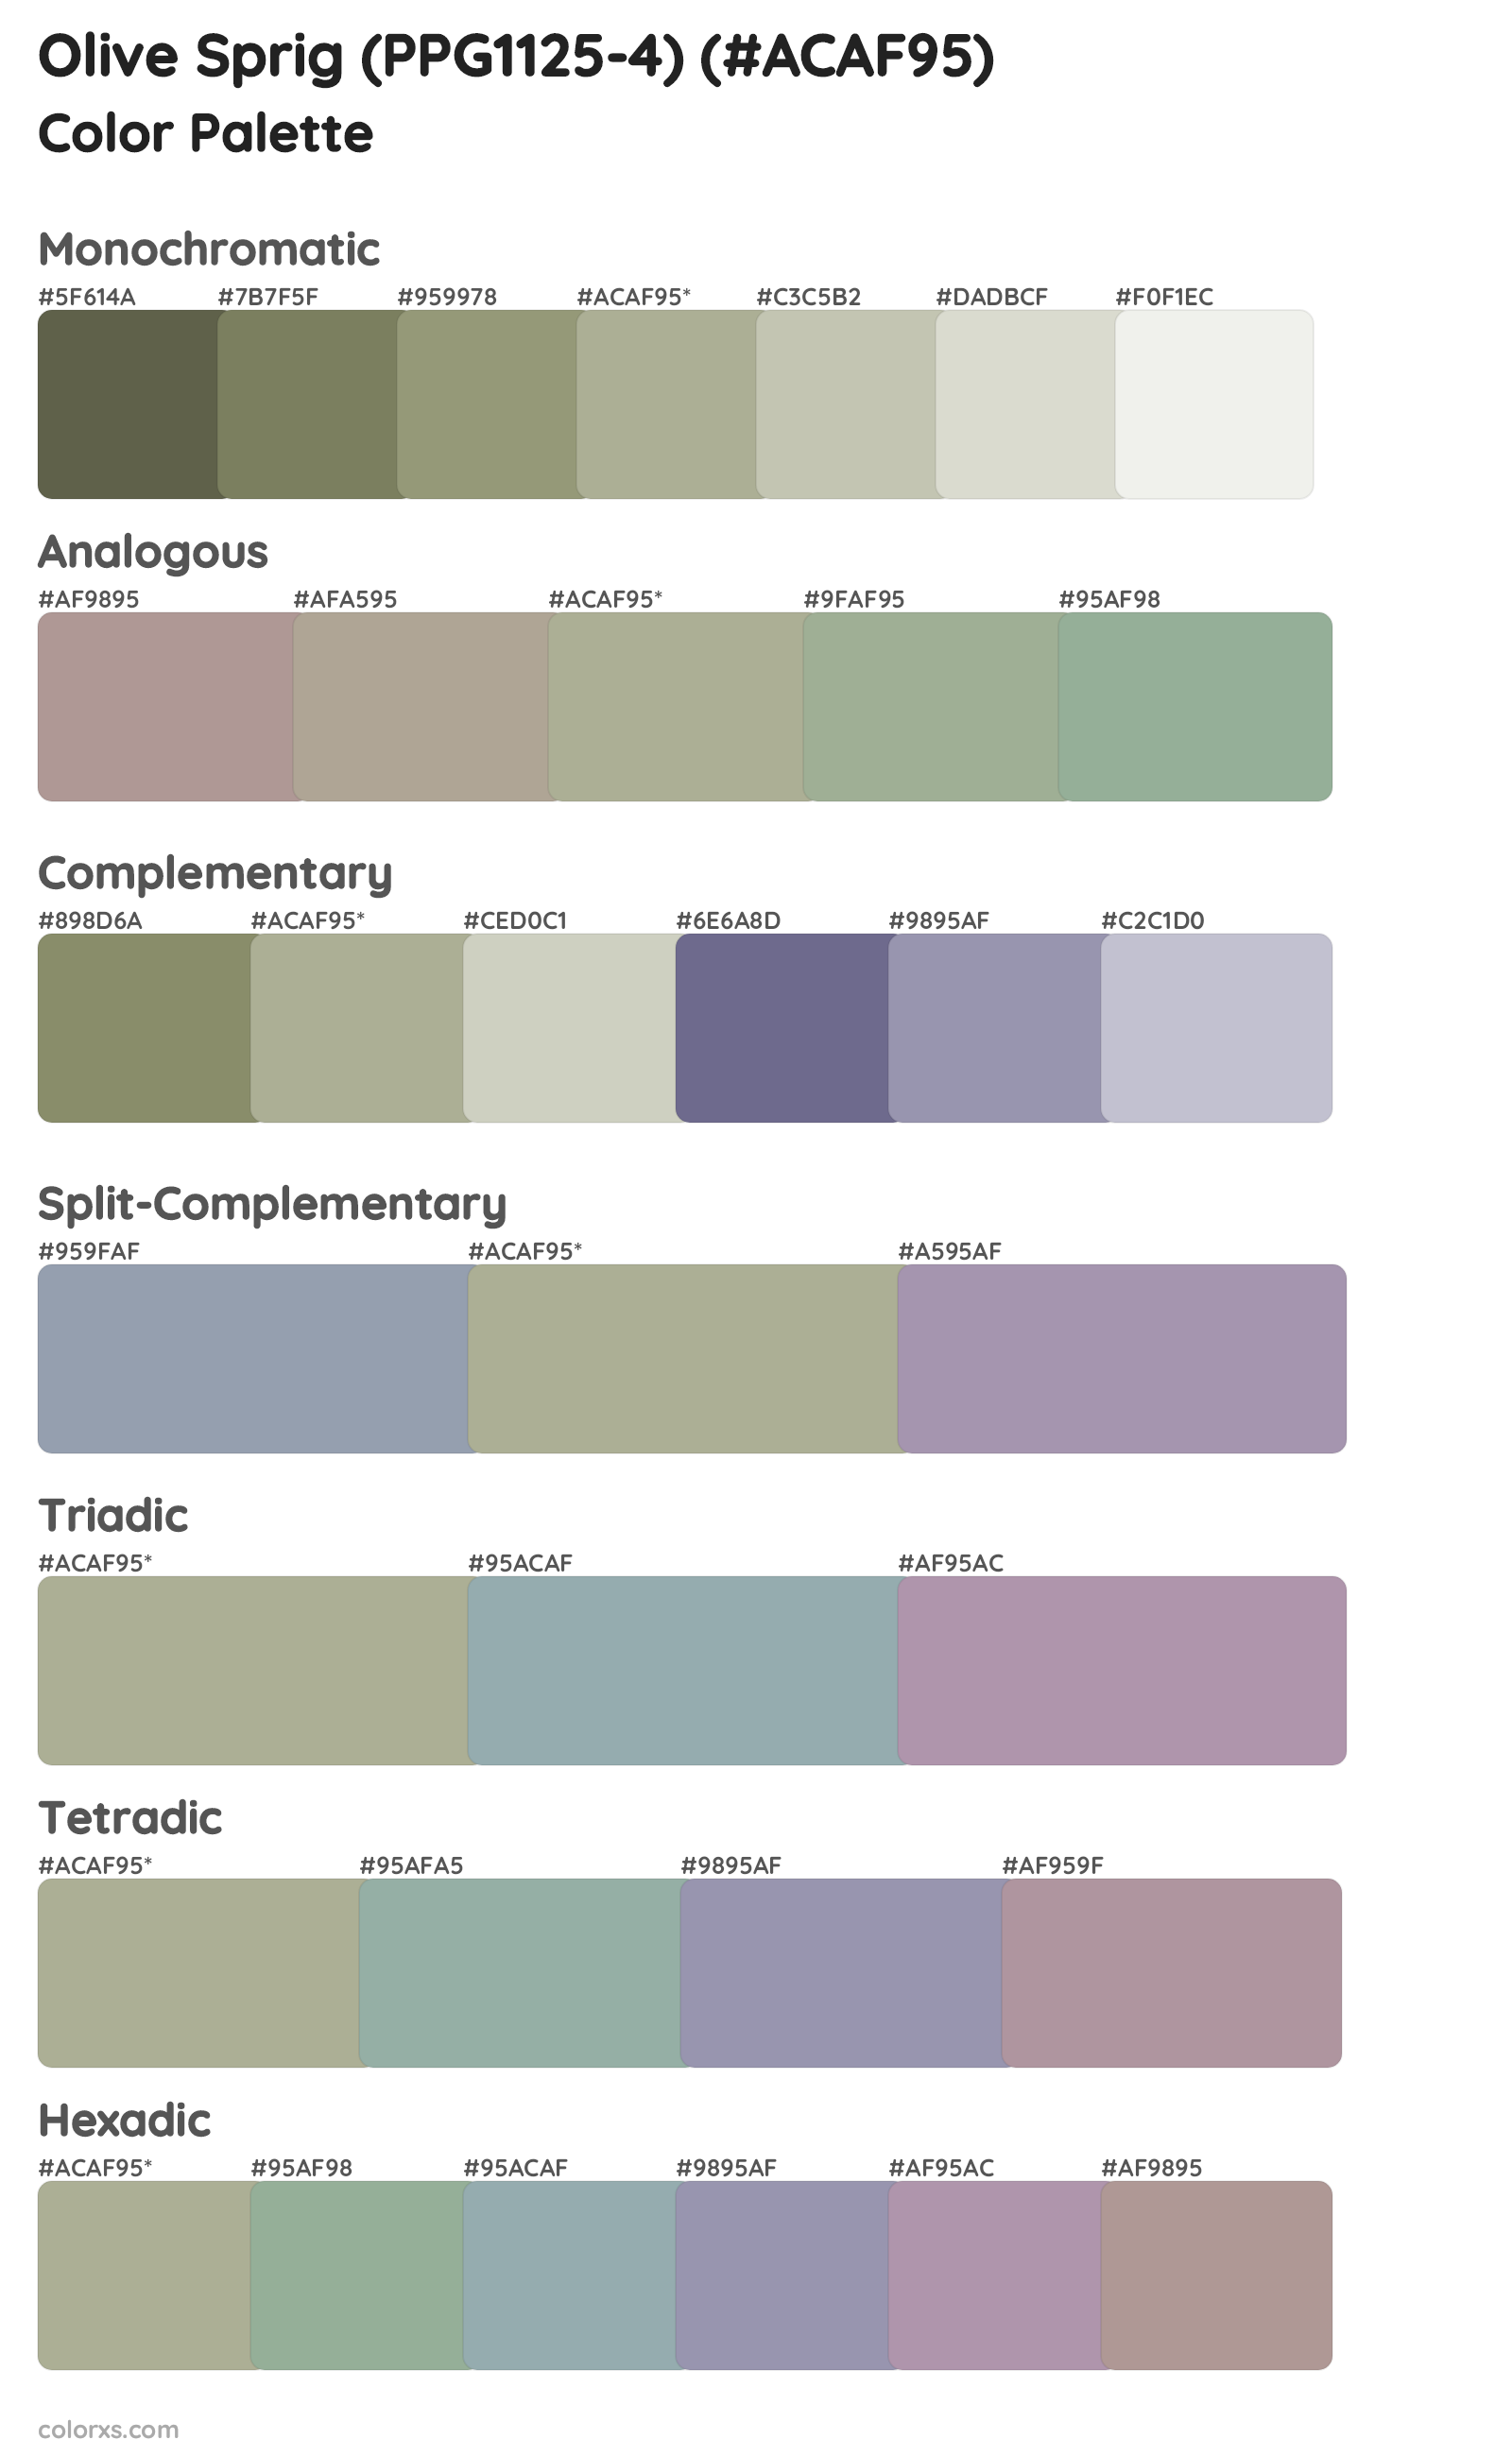 Olive Sprig (PPG1125-4) Color Scheme Palettes